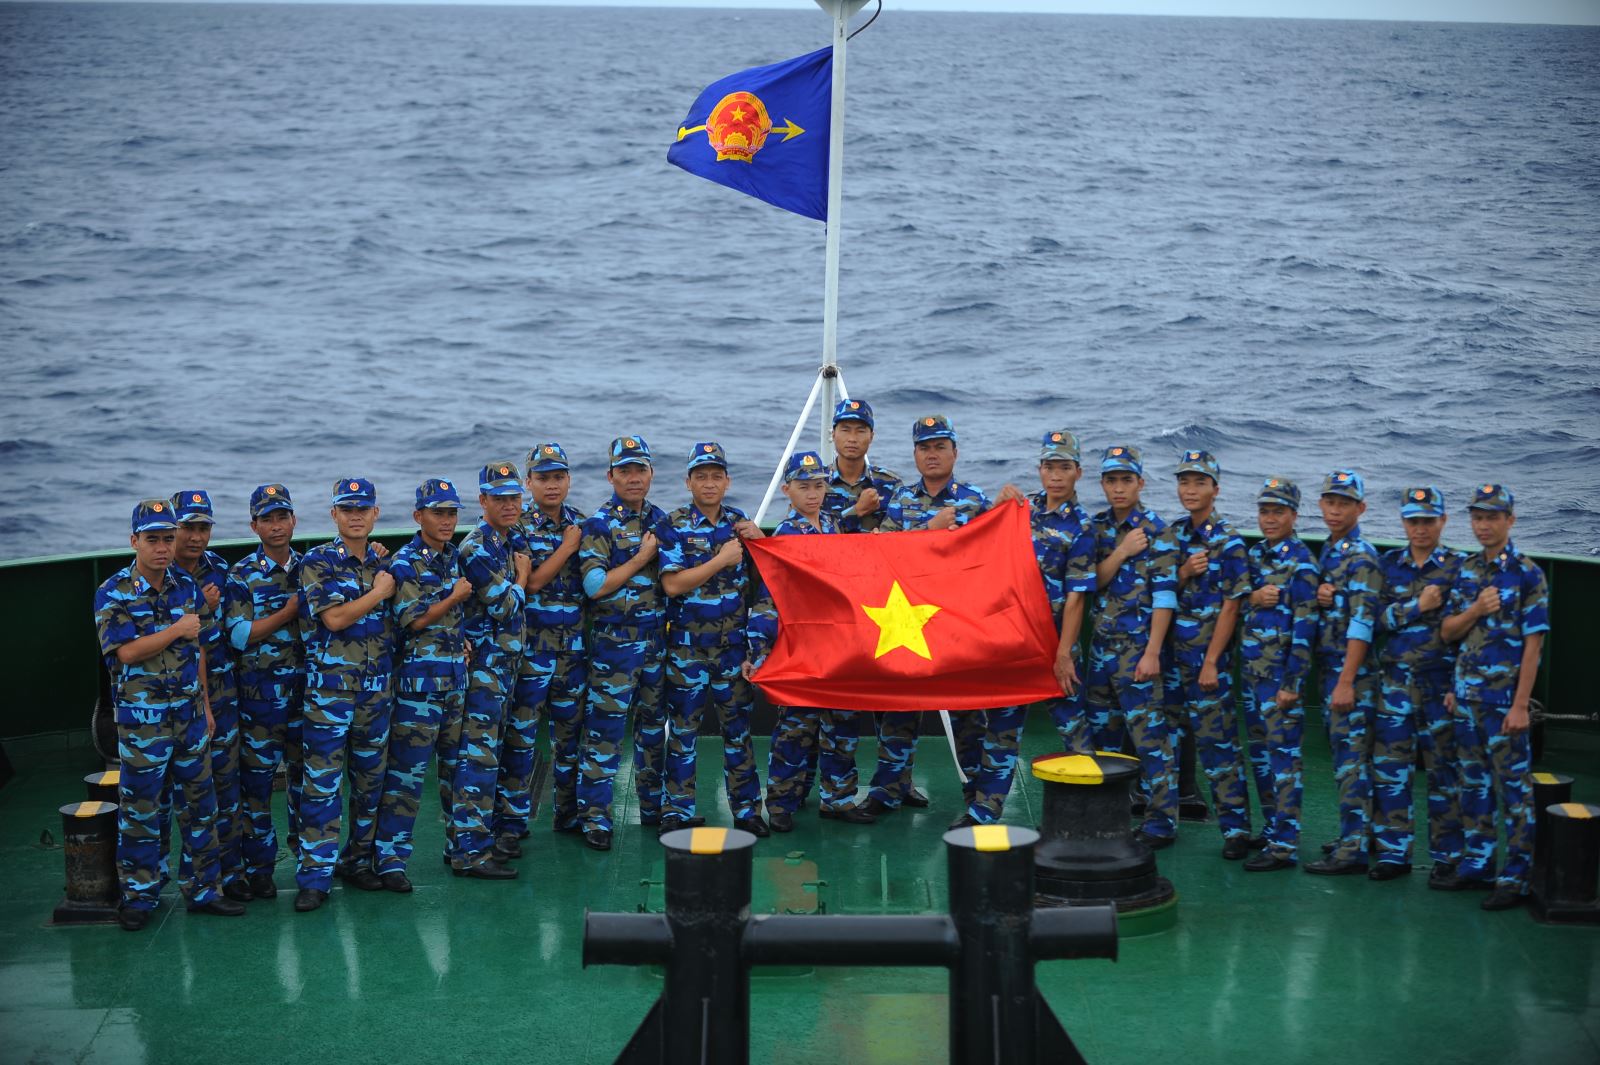 Cảnh sát biển Việt Nam - vững vàng nơi đầu sóng 